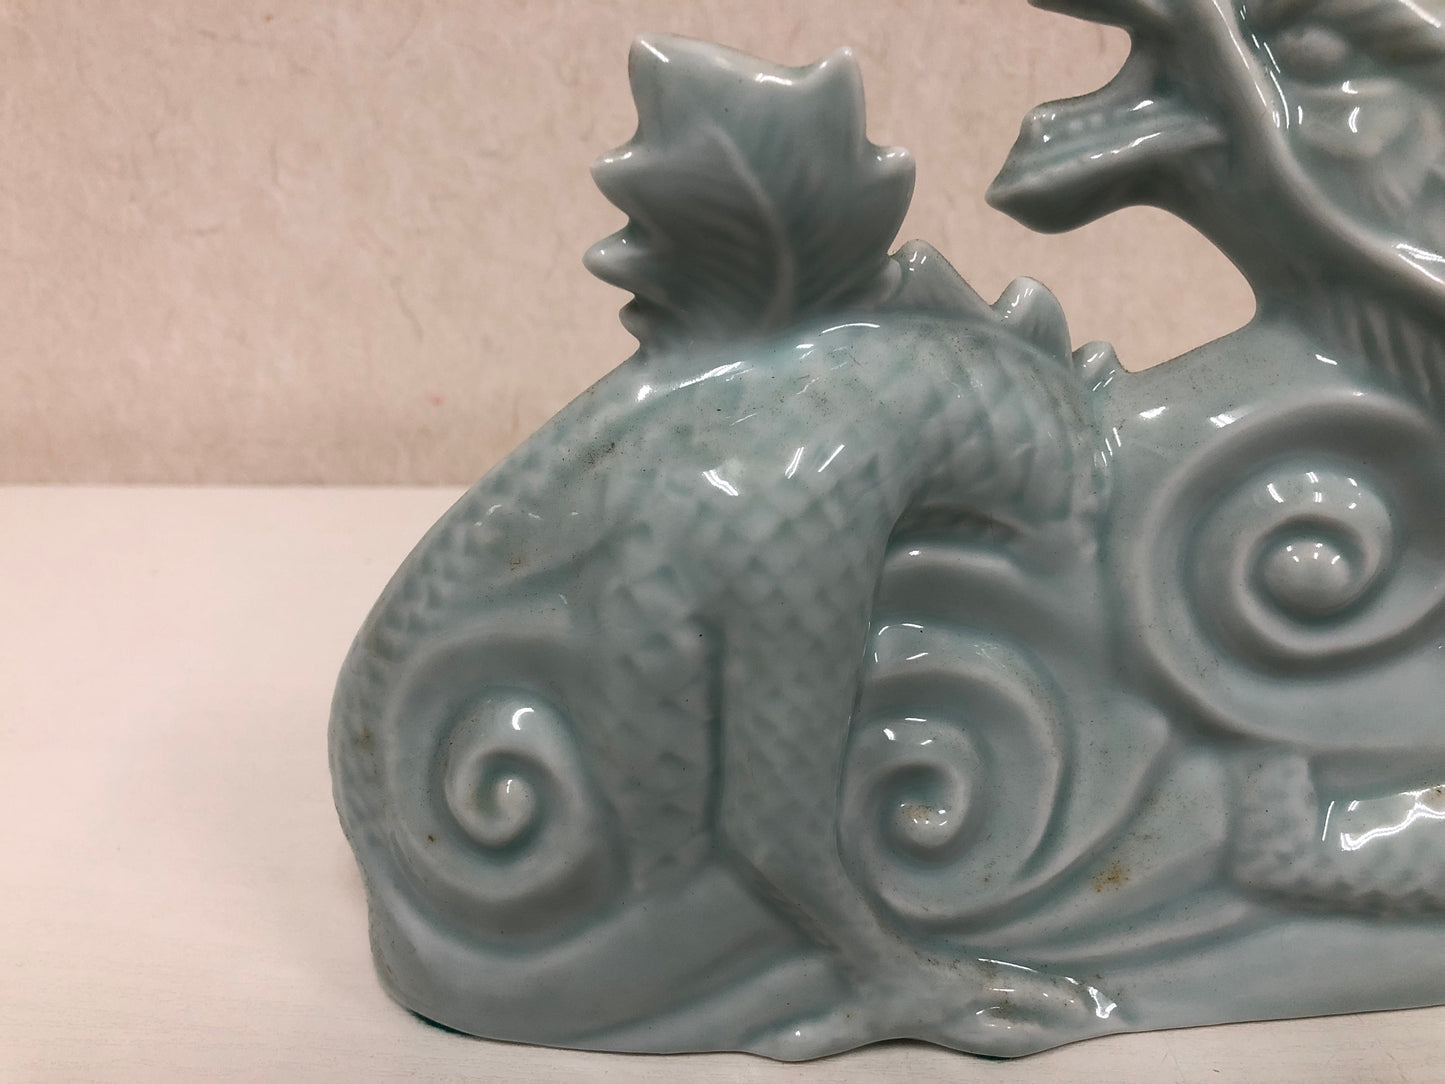 Y4088 OKIMONO Celadon Dragon figure ceramic Japan antique vintage decor interior